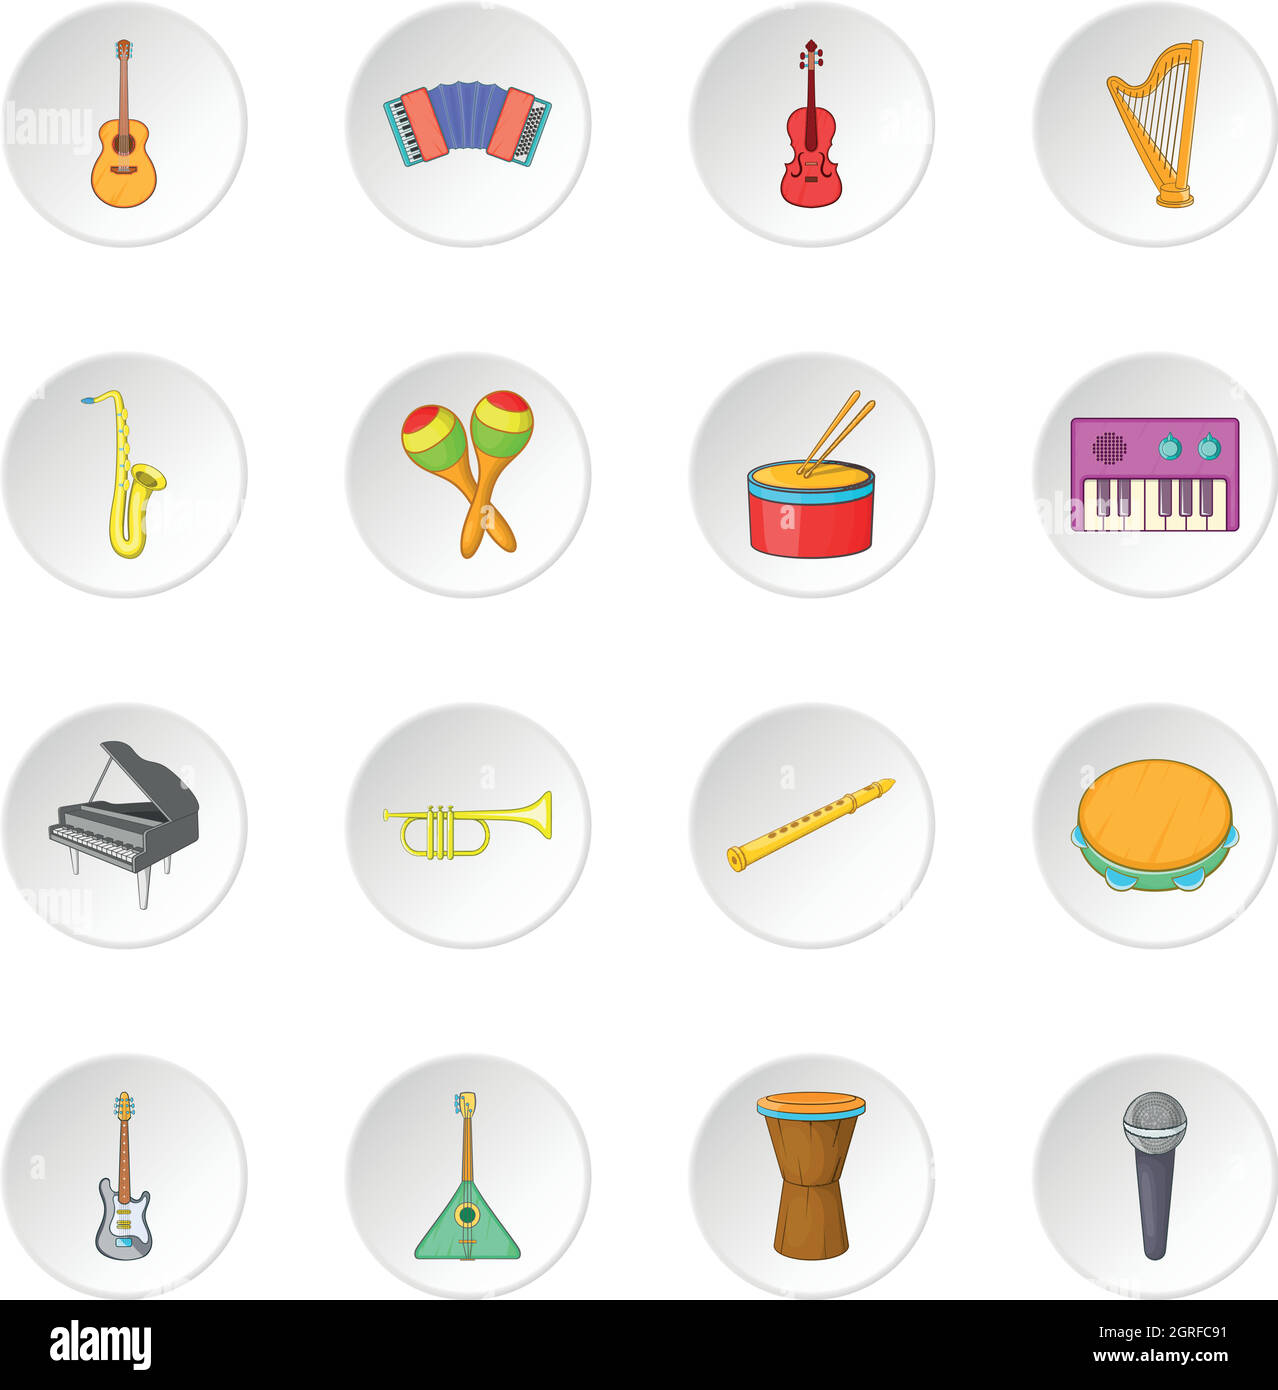 Instruments de musique, cartoon style icons set Illustration de Vecteur